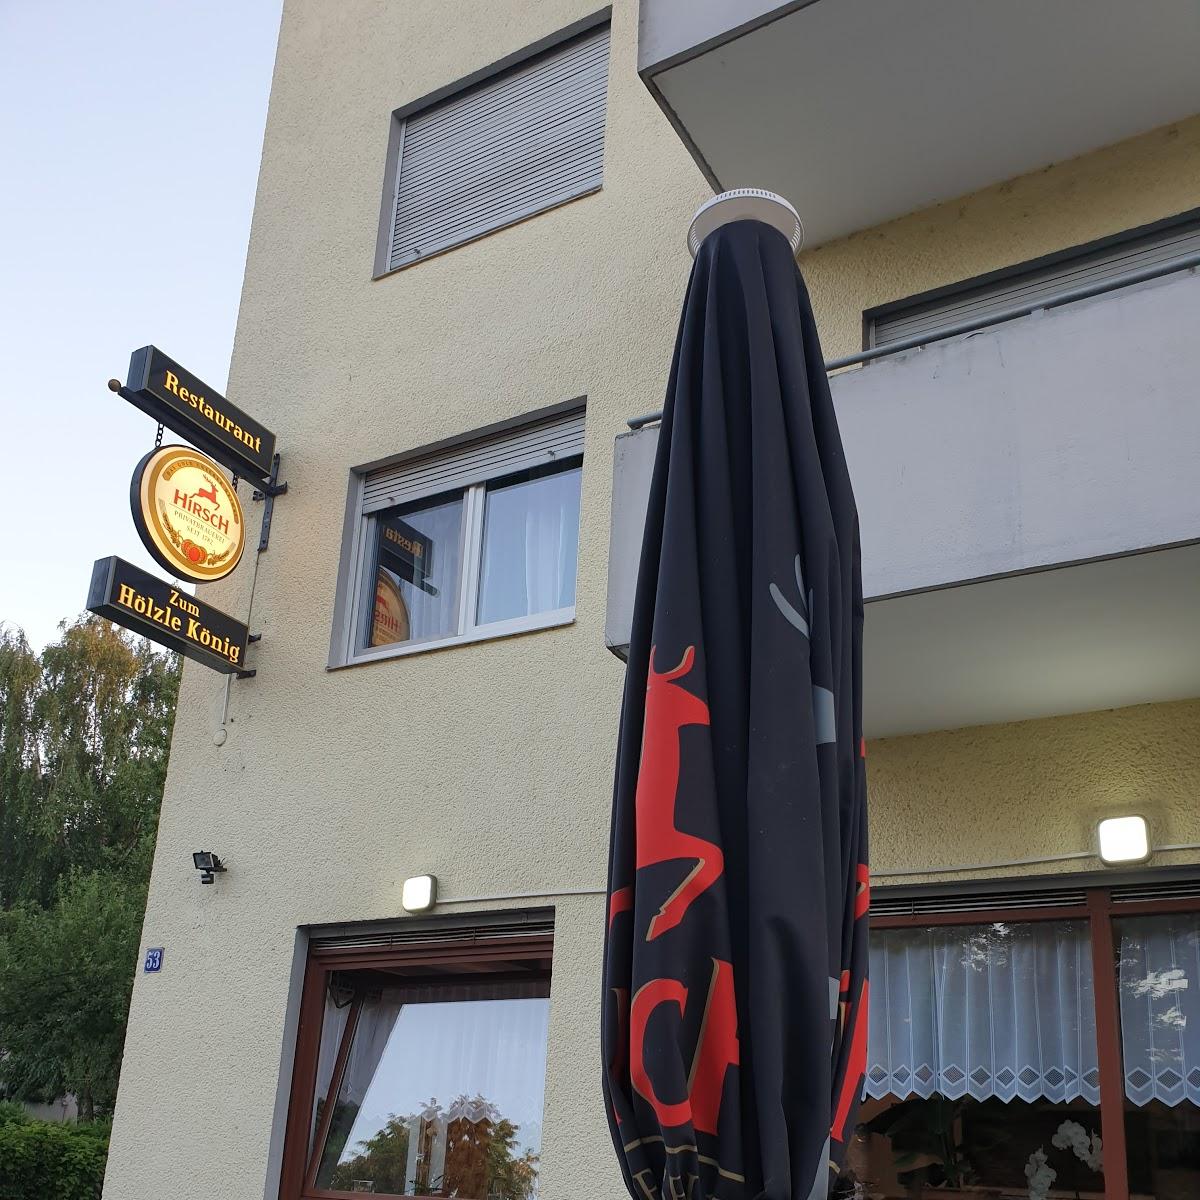 Restaurant "Zum Hölzle-König" in Singen (Hohentwiel)